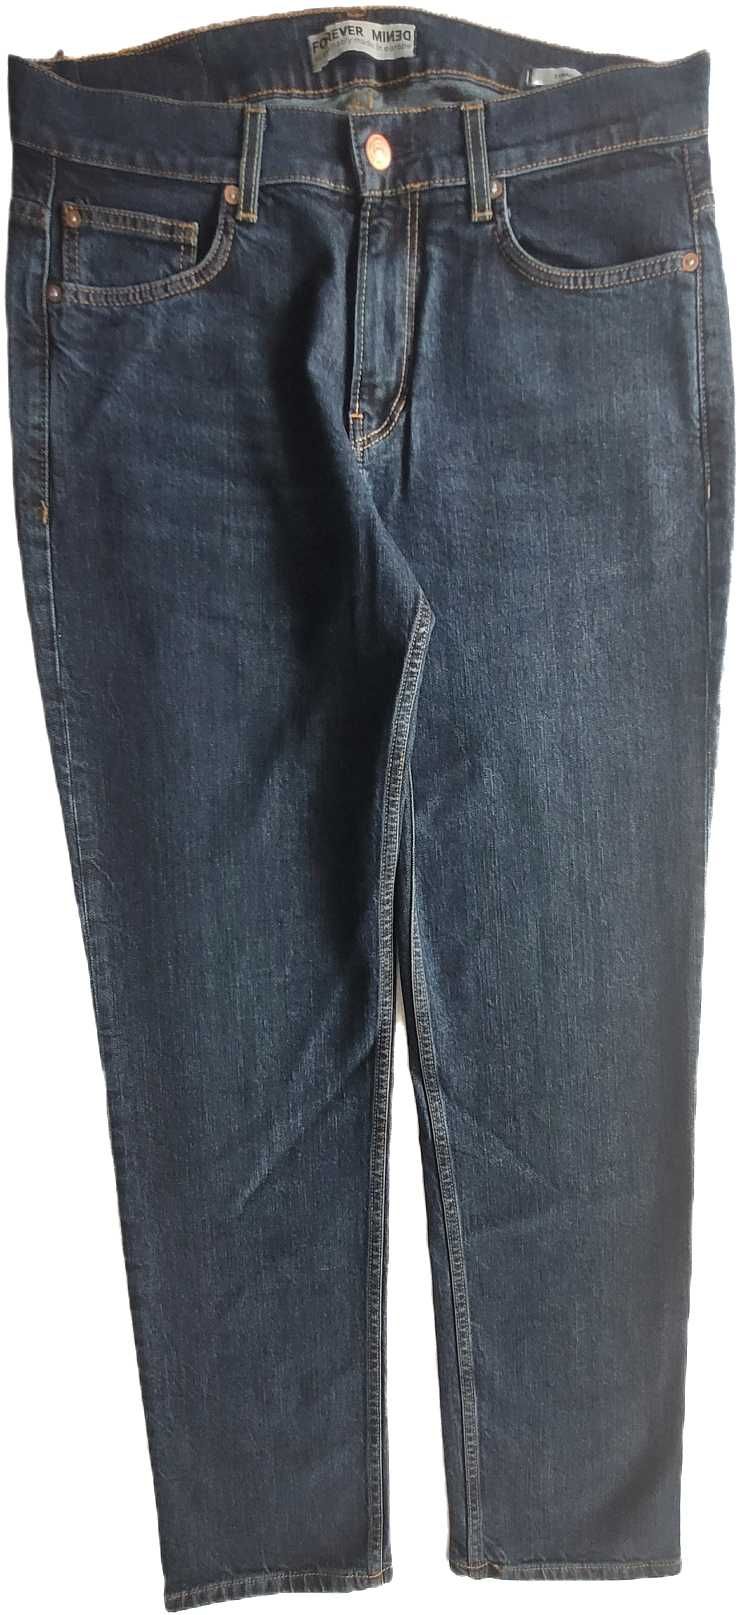 Spodnie męskie jeans W32 L32, straight.